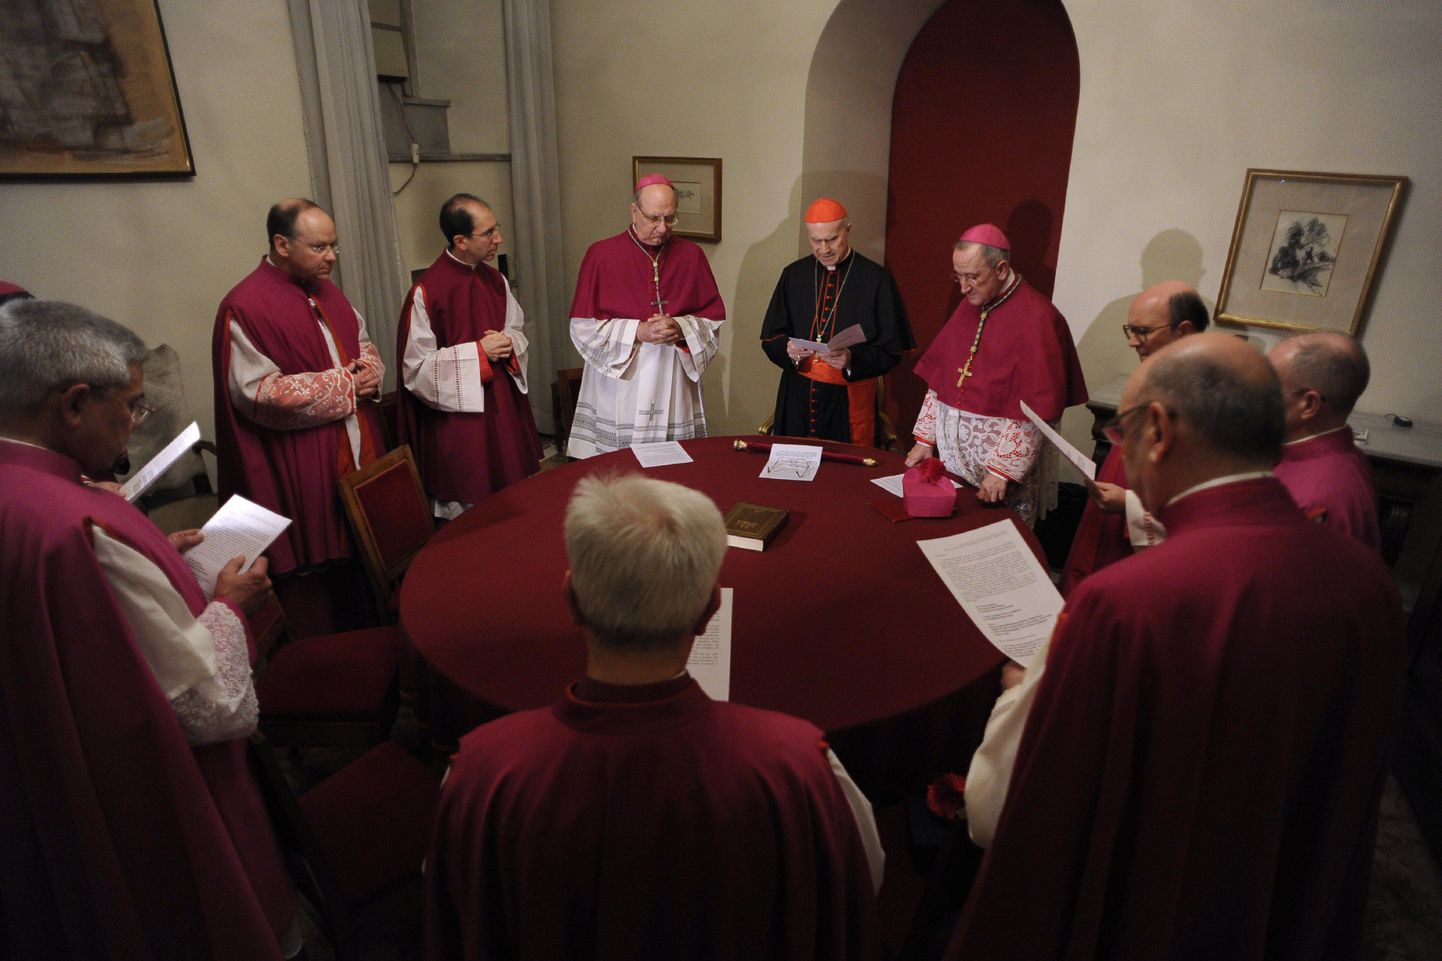 Vatikanis valmistutakse uue paavsti valimiseks